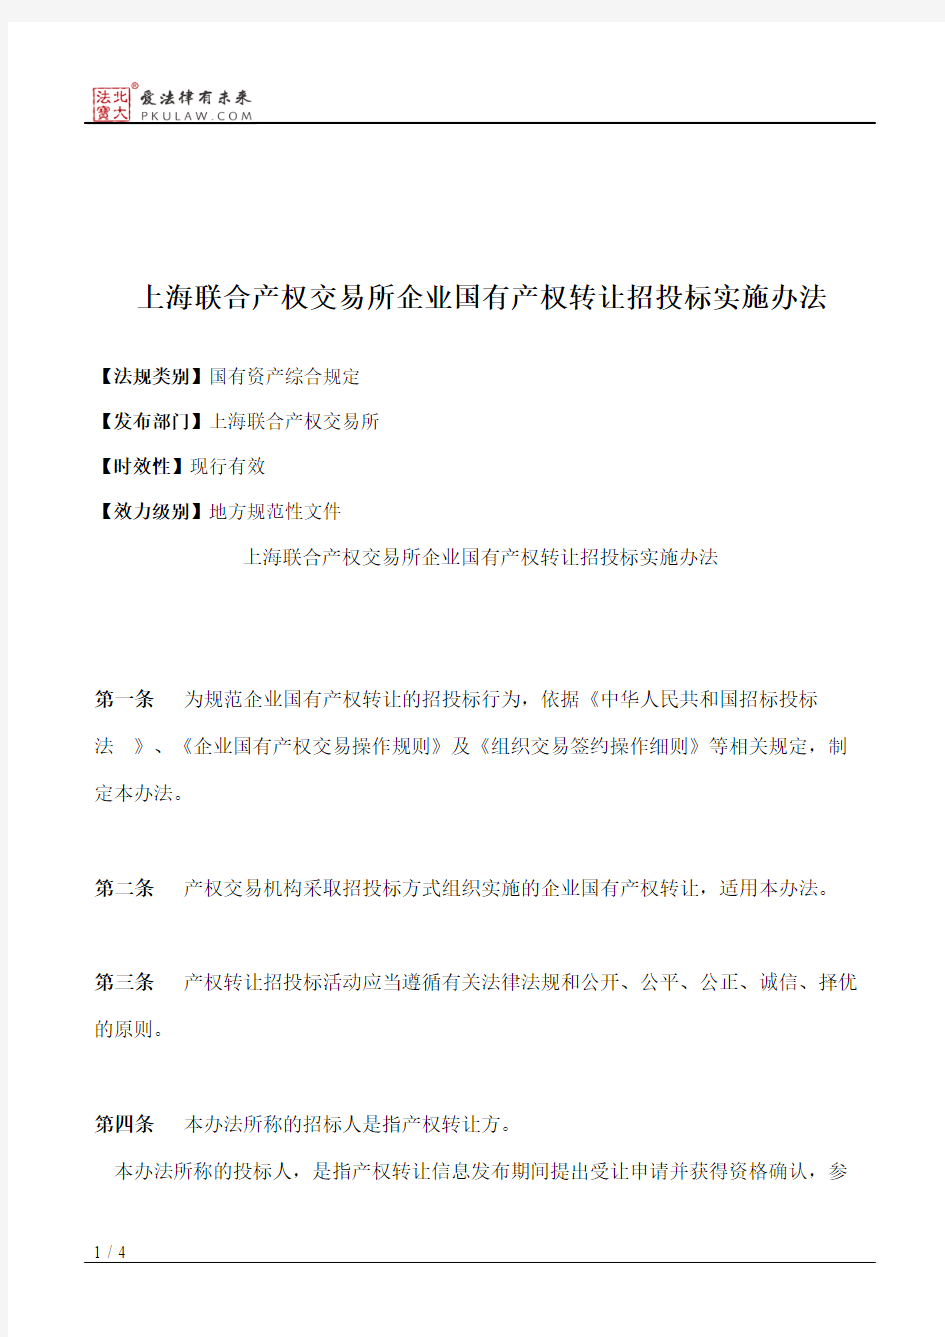 上海联合产权交易所企业国有产权转让招投标实施办法